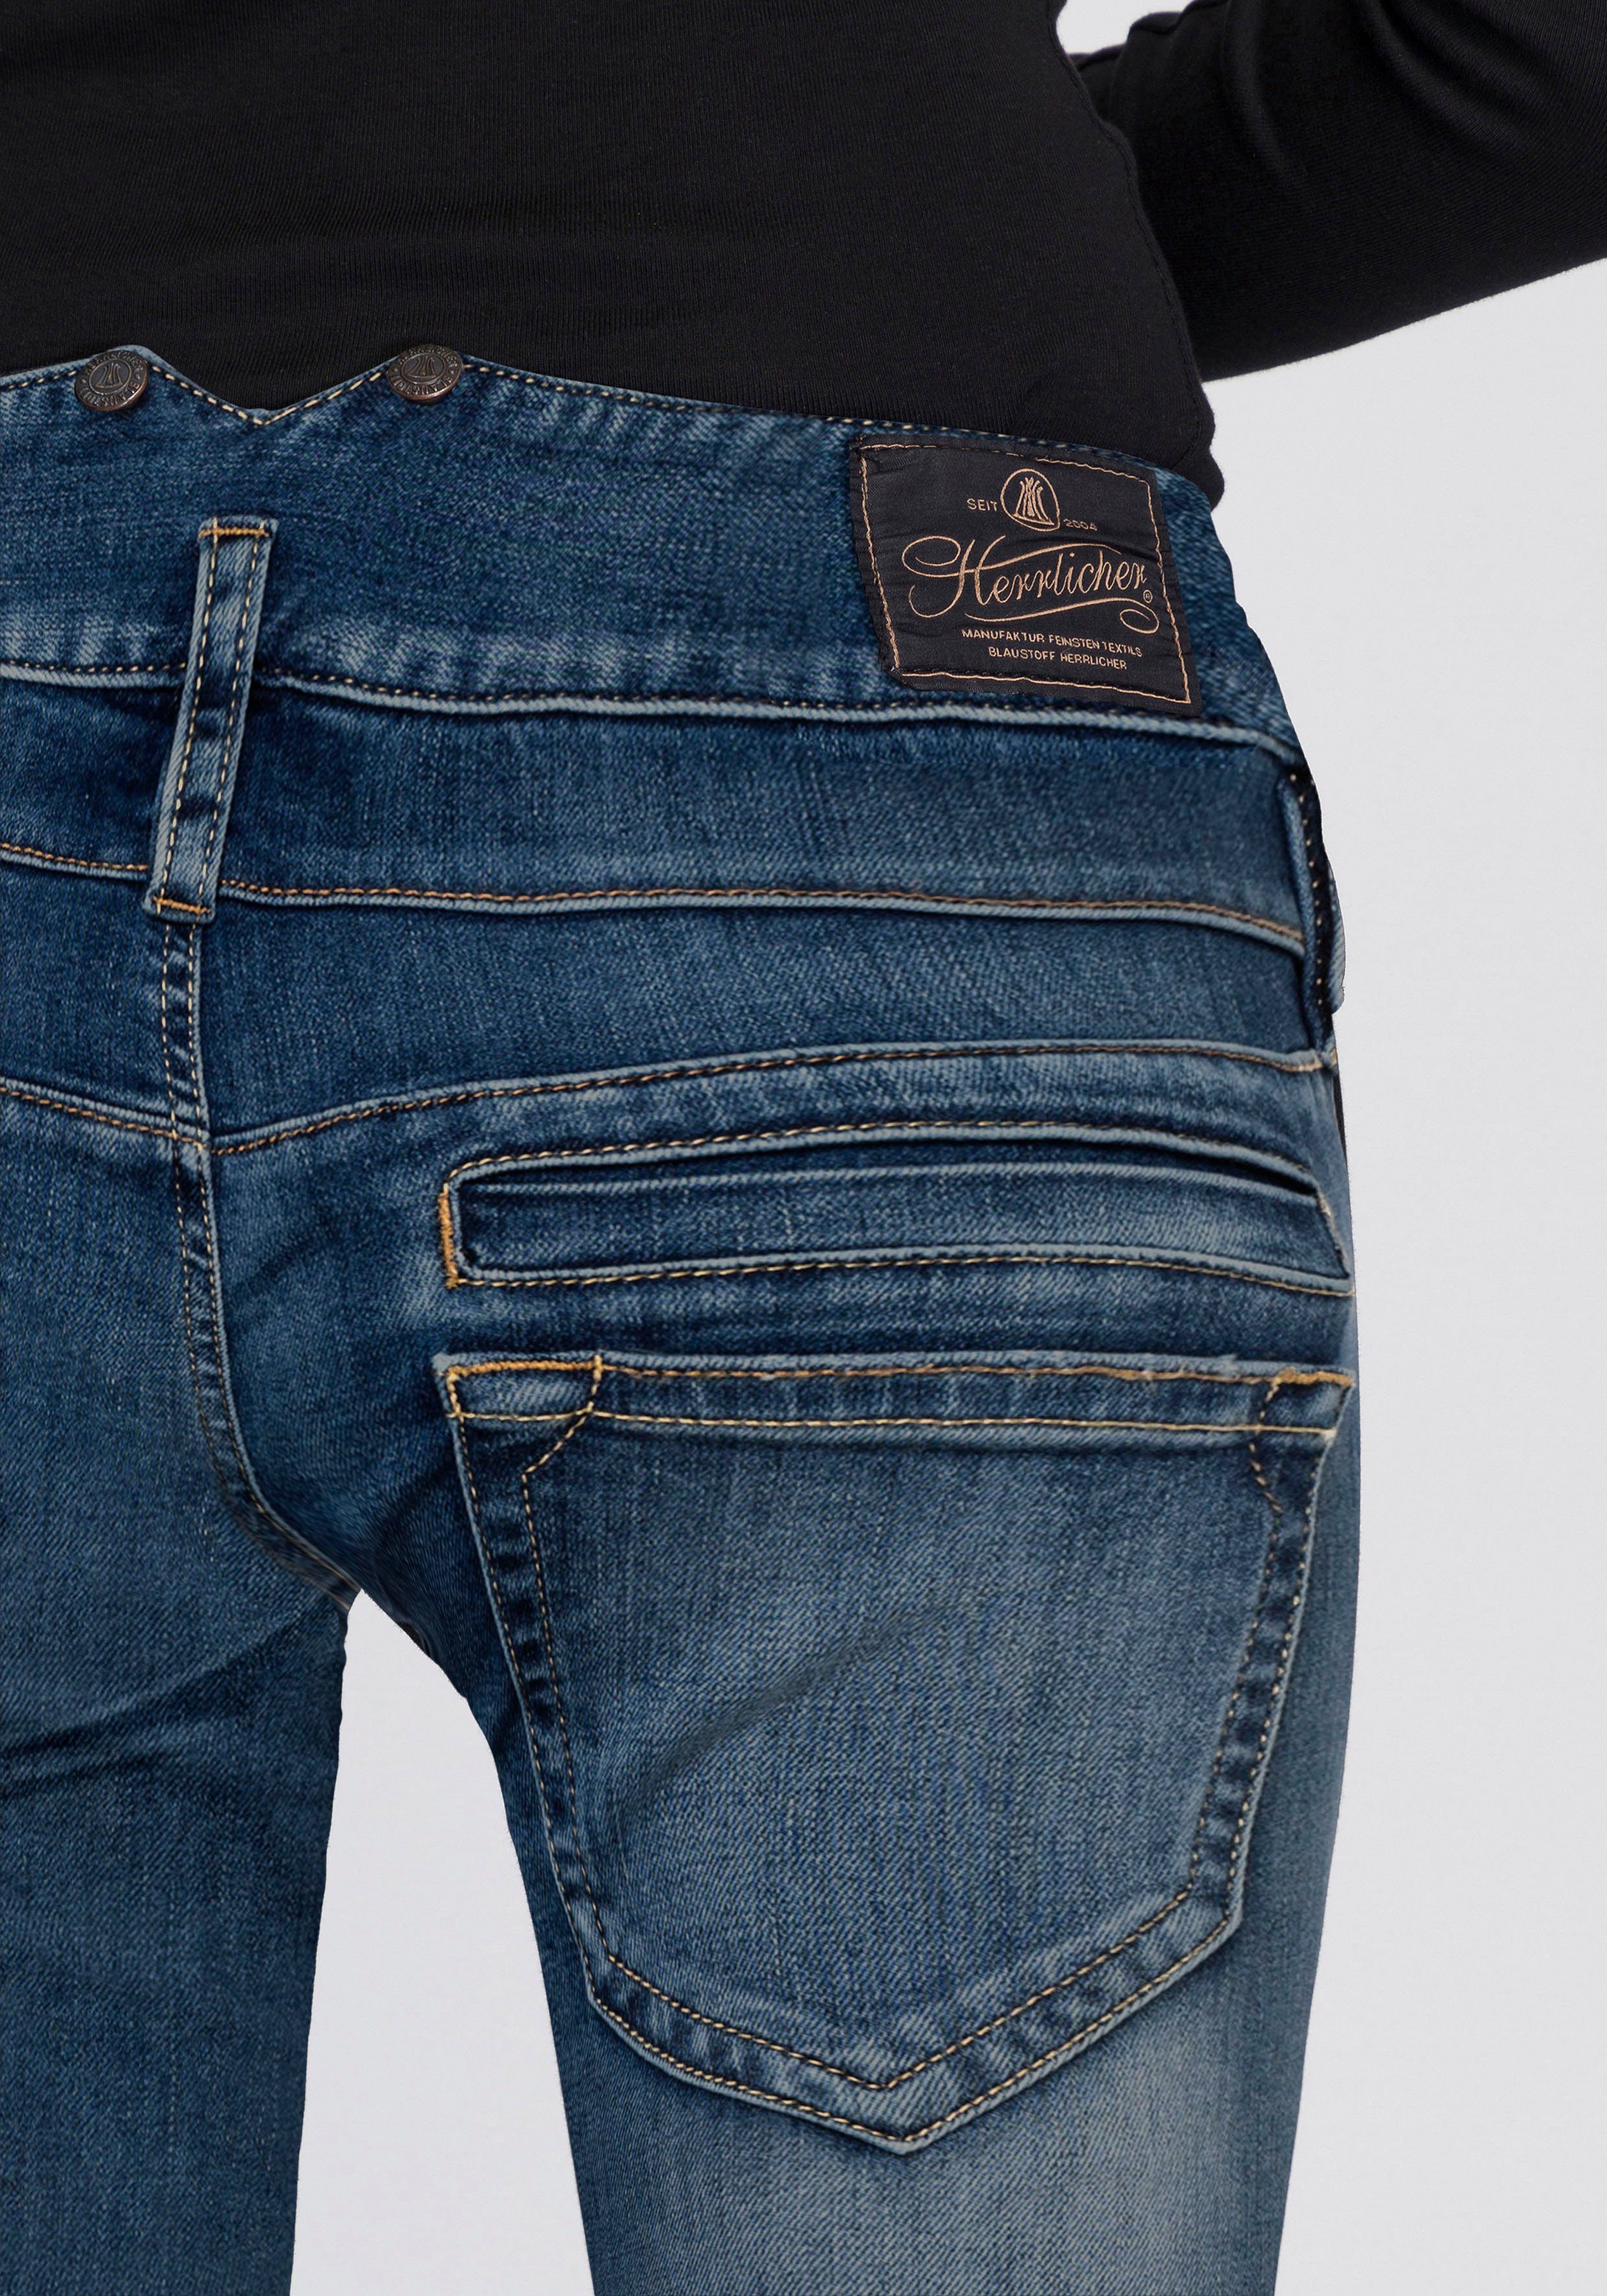 Damen Jeans Herrlicher Slim-fit-Jeans PITCH SLIM ORGANIC DENIM umweltfreundlich dank Kitotex Technology